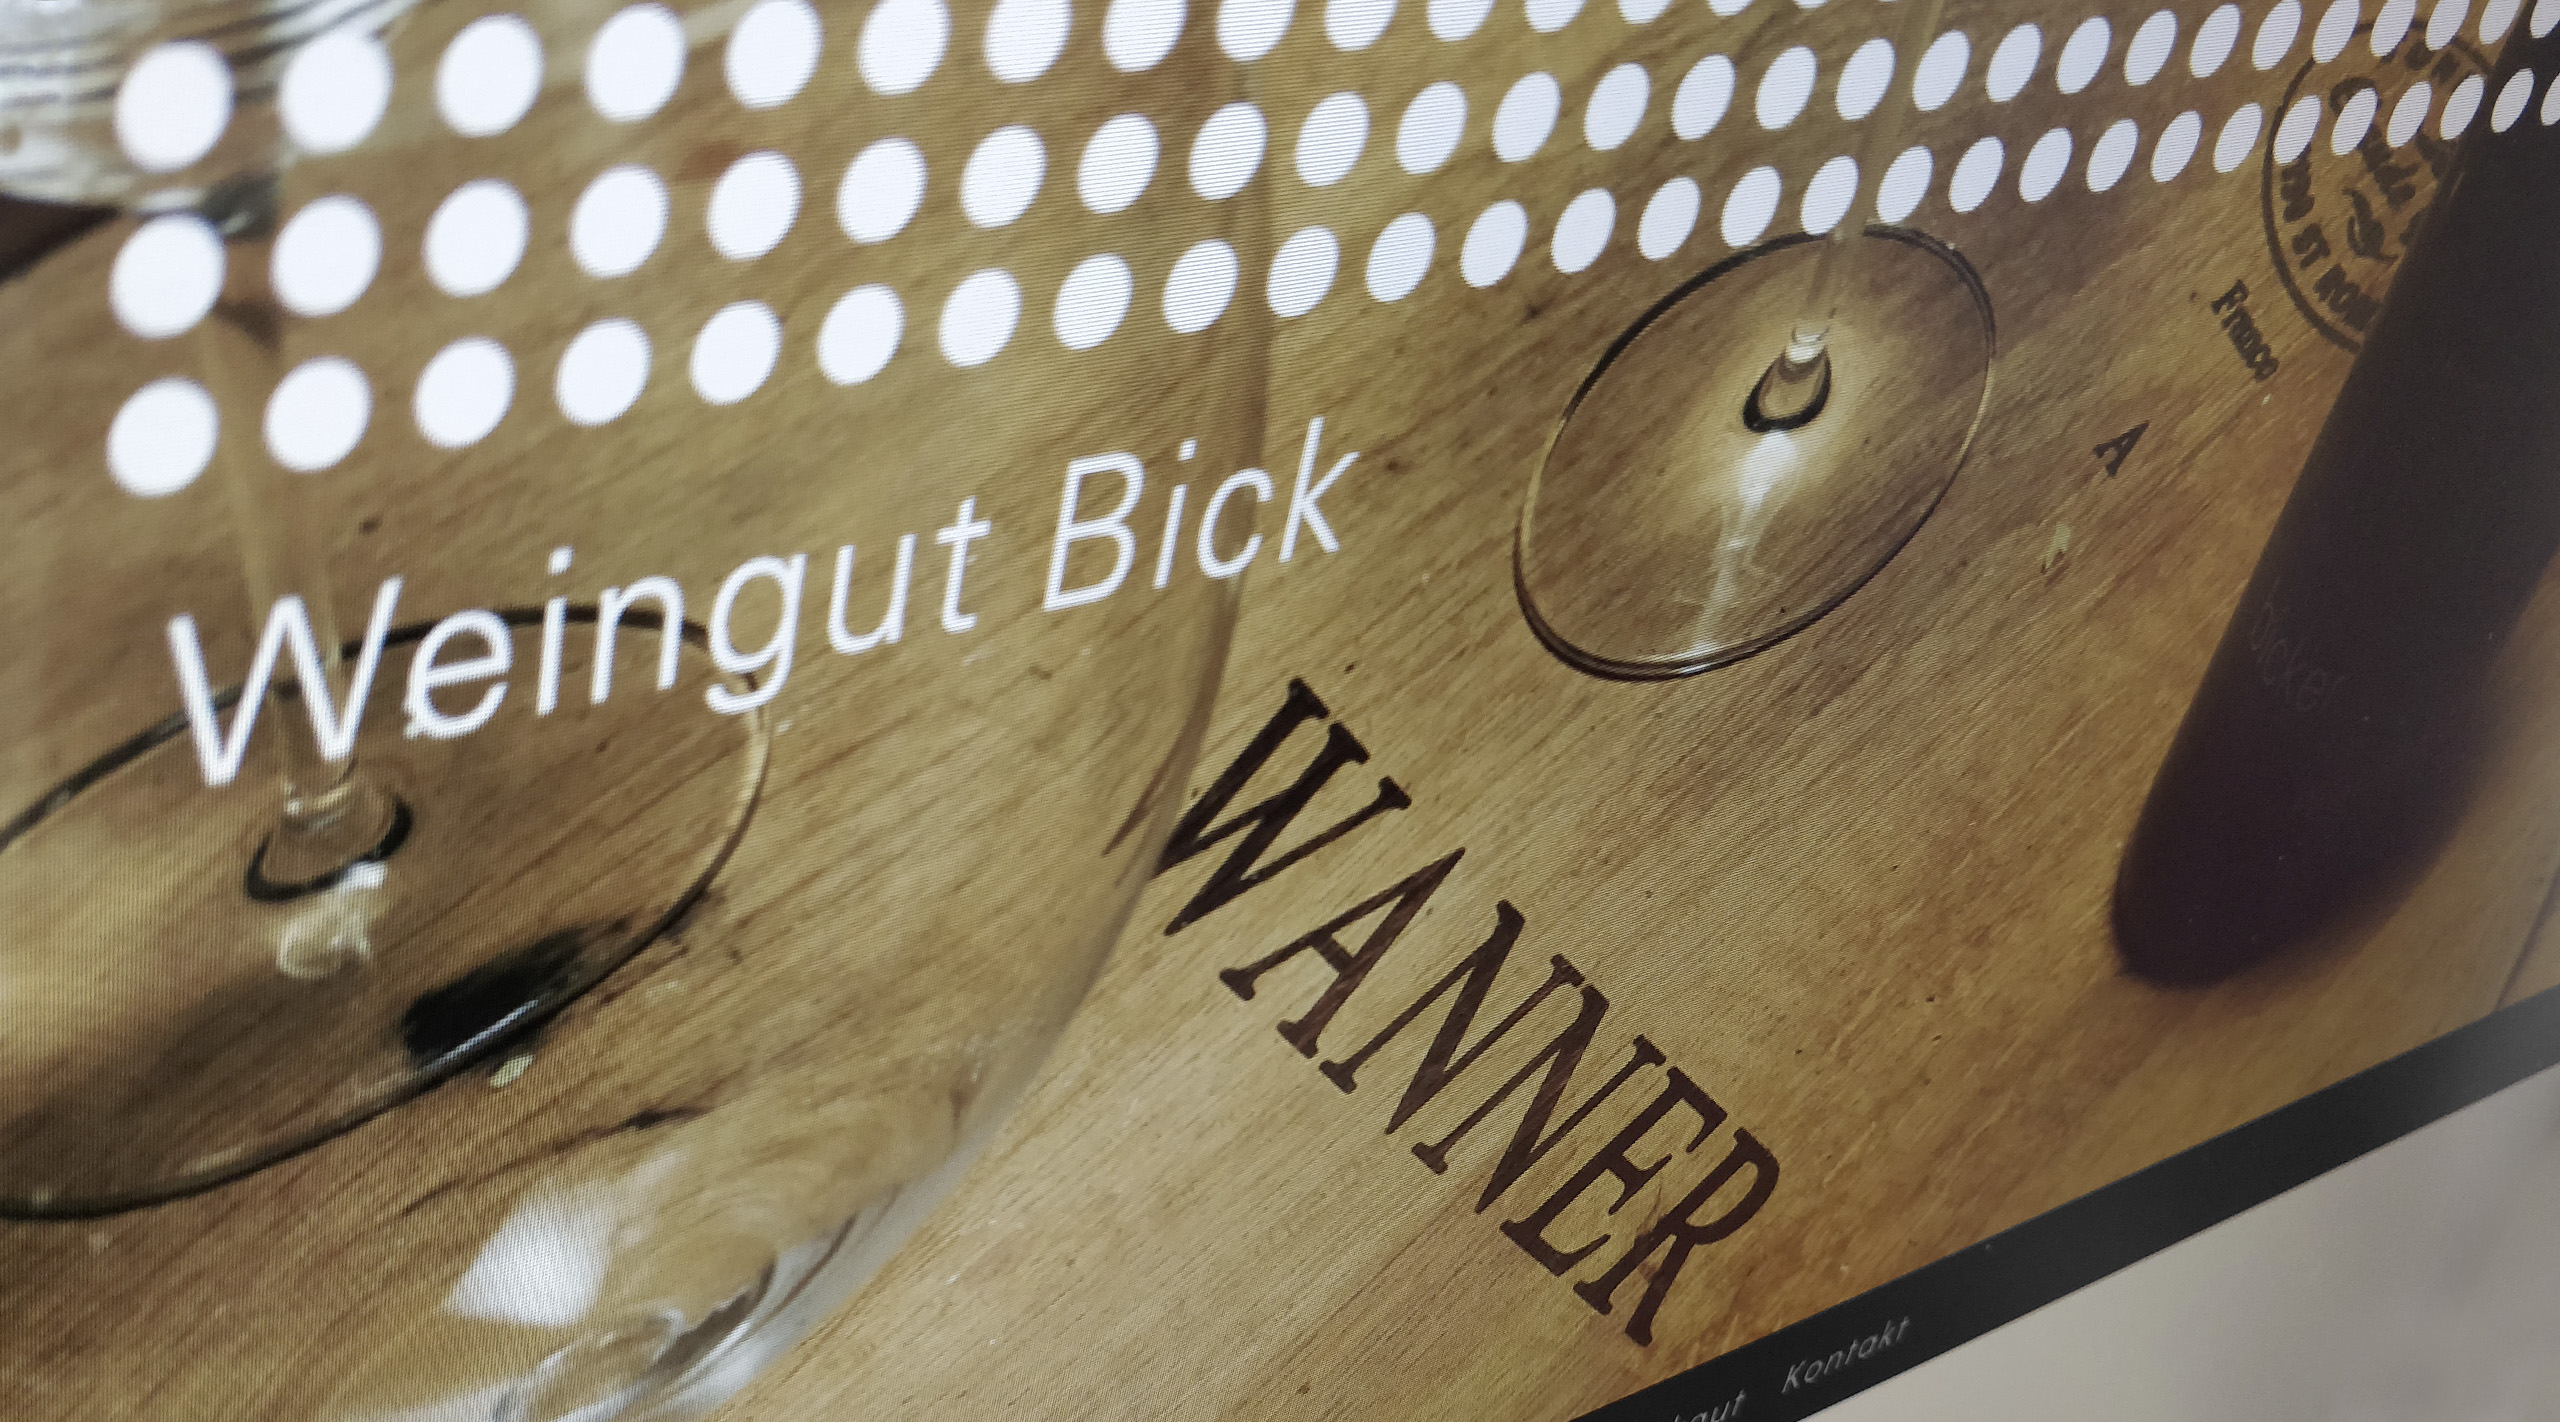 Weingut Bick > Onlineshop